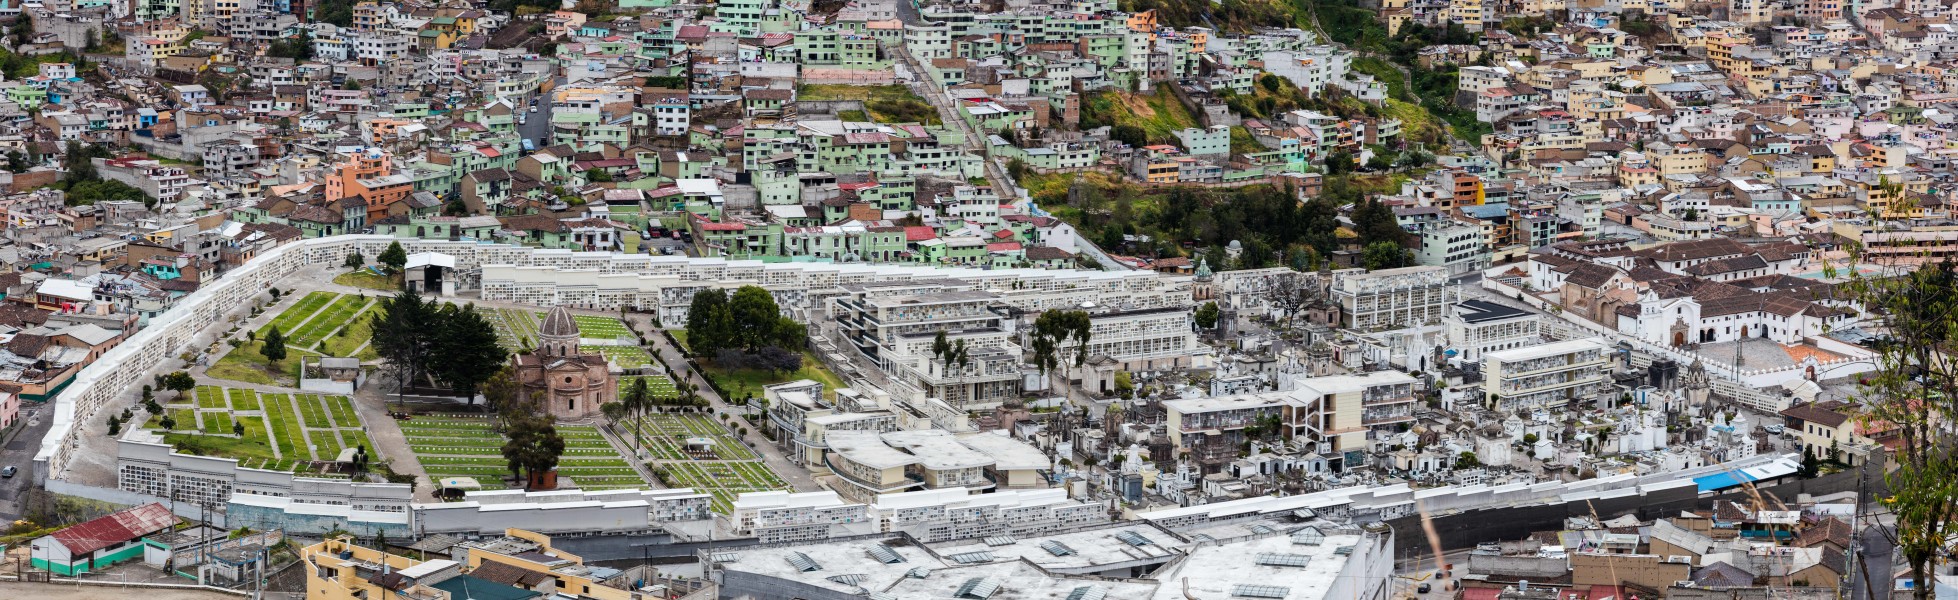 Cementerio de San Diego, Quito, Ecuador, 2015-07-22, DD 56-58 PAN